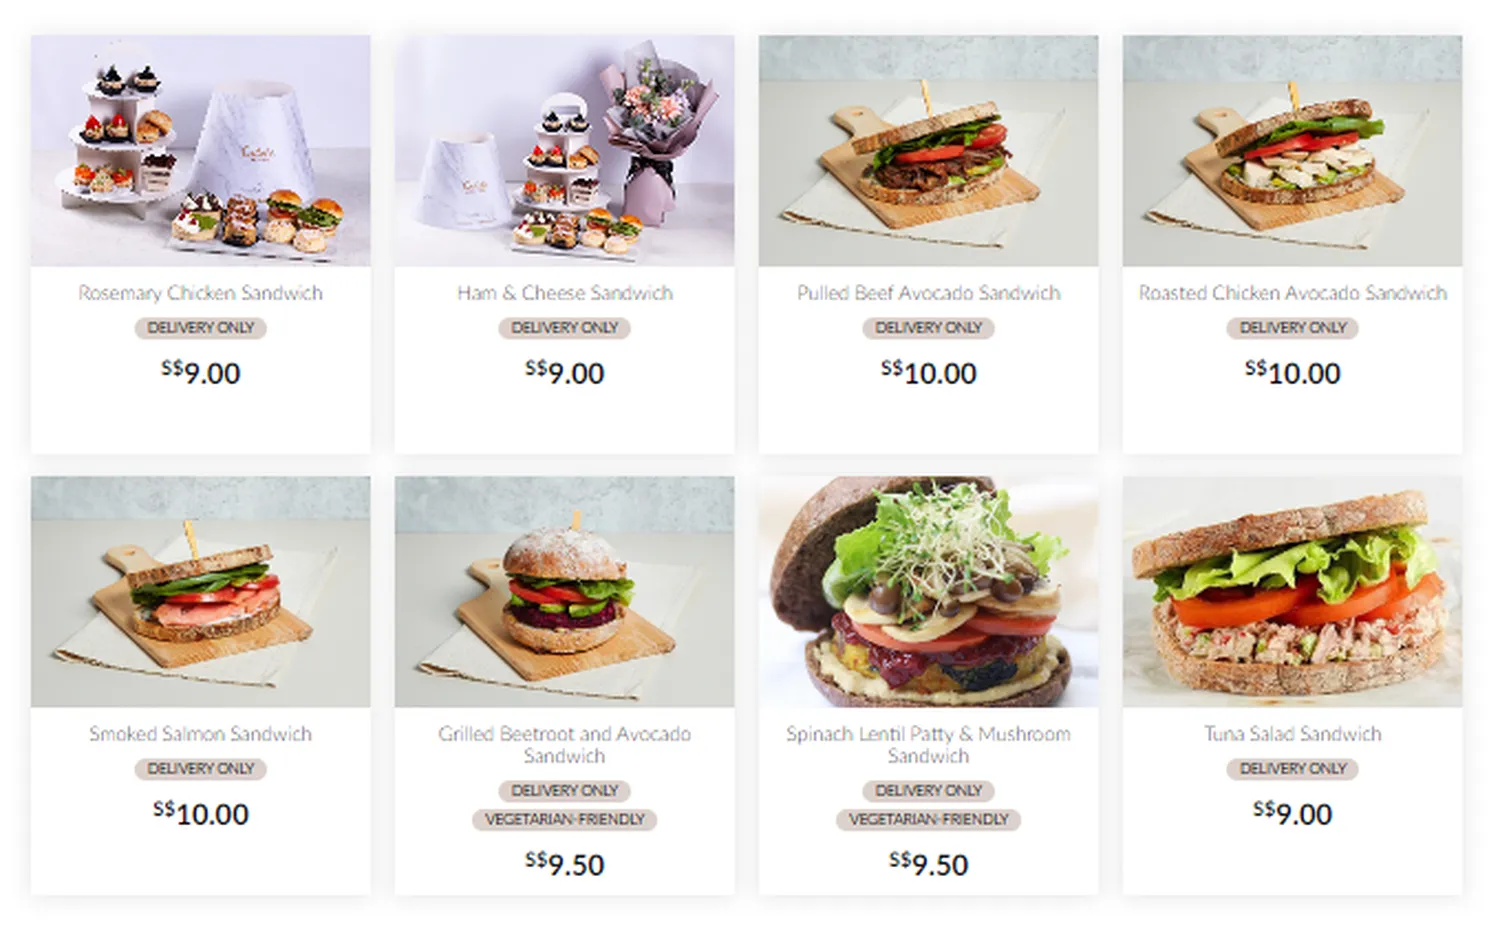 cedele menu singapore meals sandwiches